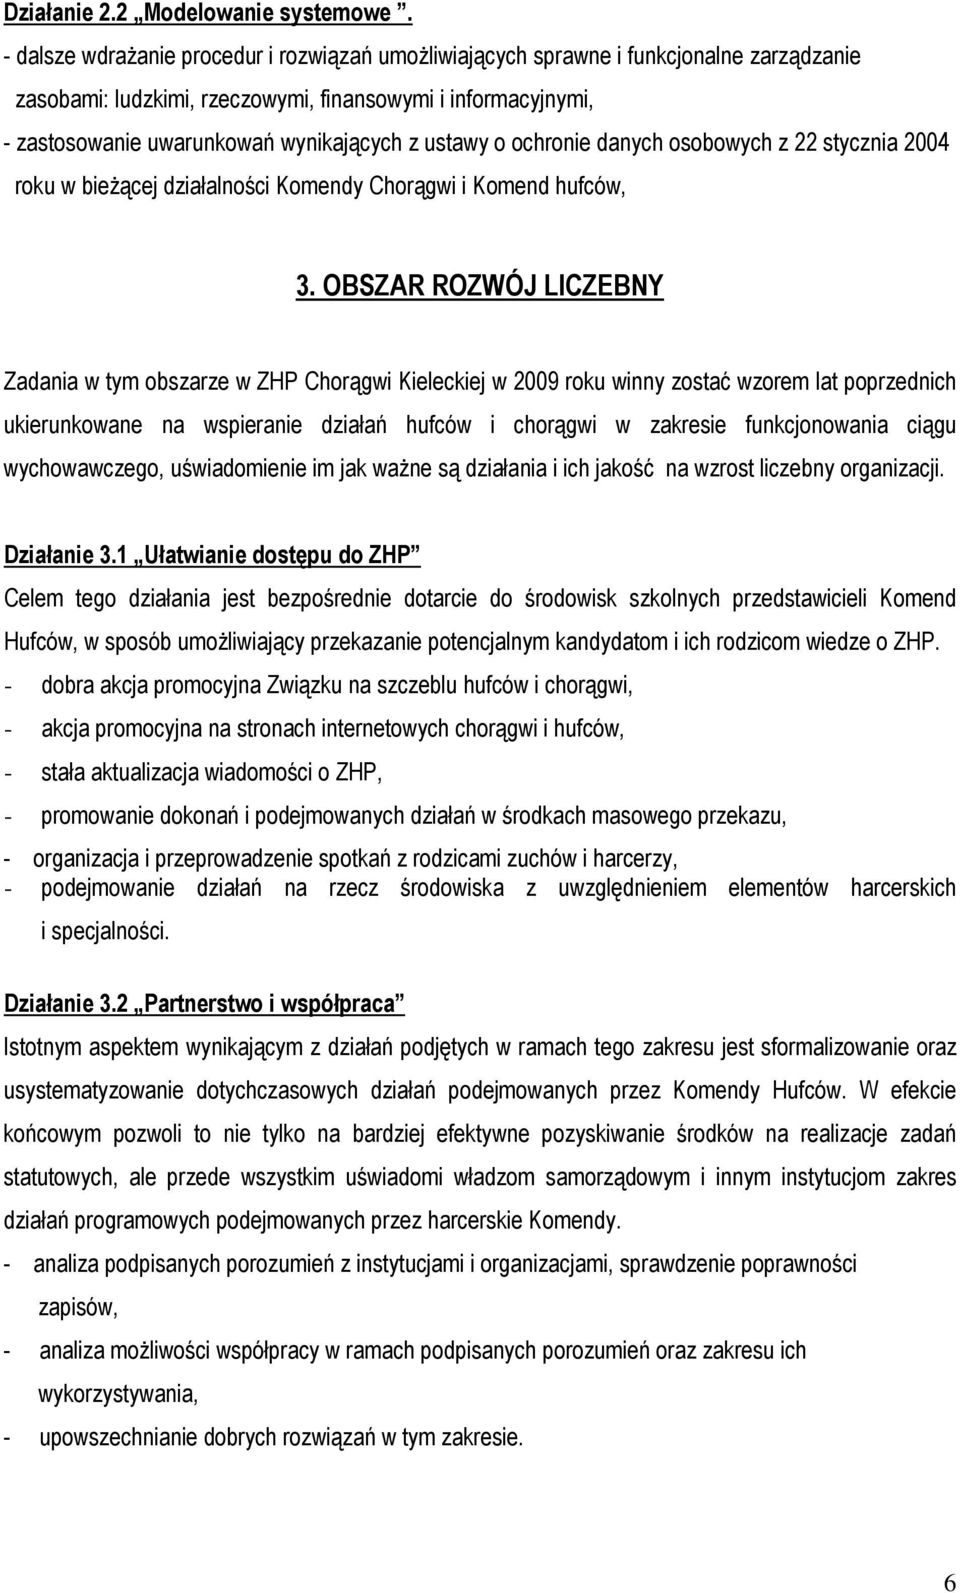 ustawy o ochronie danych osobowych z 22 stycznia 2004 roku w bieżącej działalności Komendy Chorągwi i Komend hufców, 3.